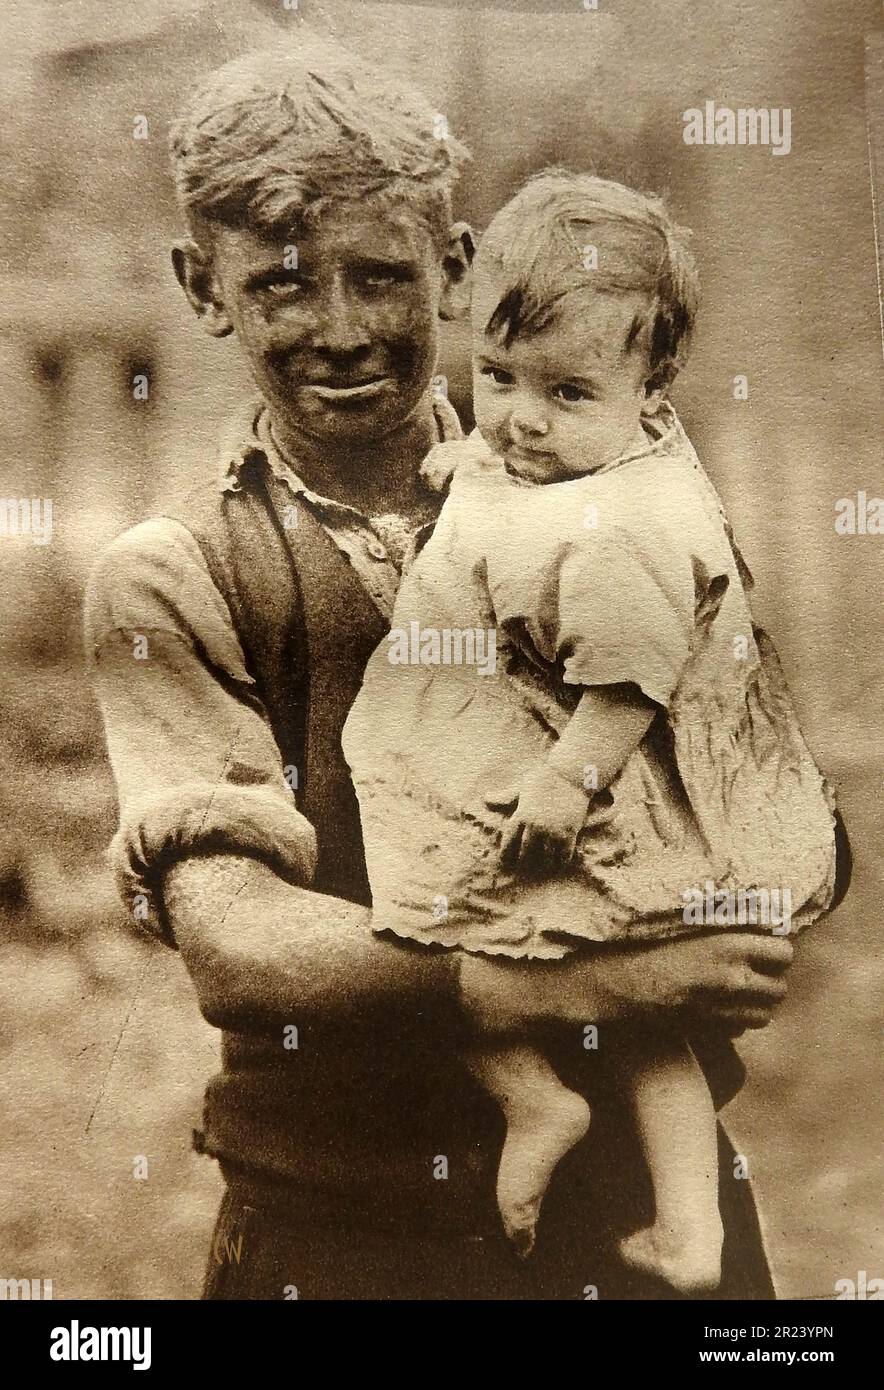 Pays de Galles en 1939 - Un portrait d'un mineur gallois des années 1930 et d'un enfant, montrant des vêtements typiques de l'époque. Banque D'Images